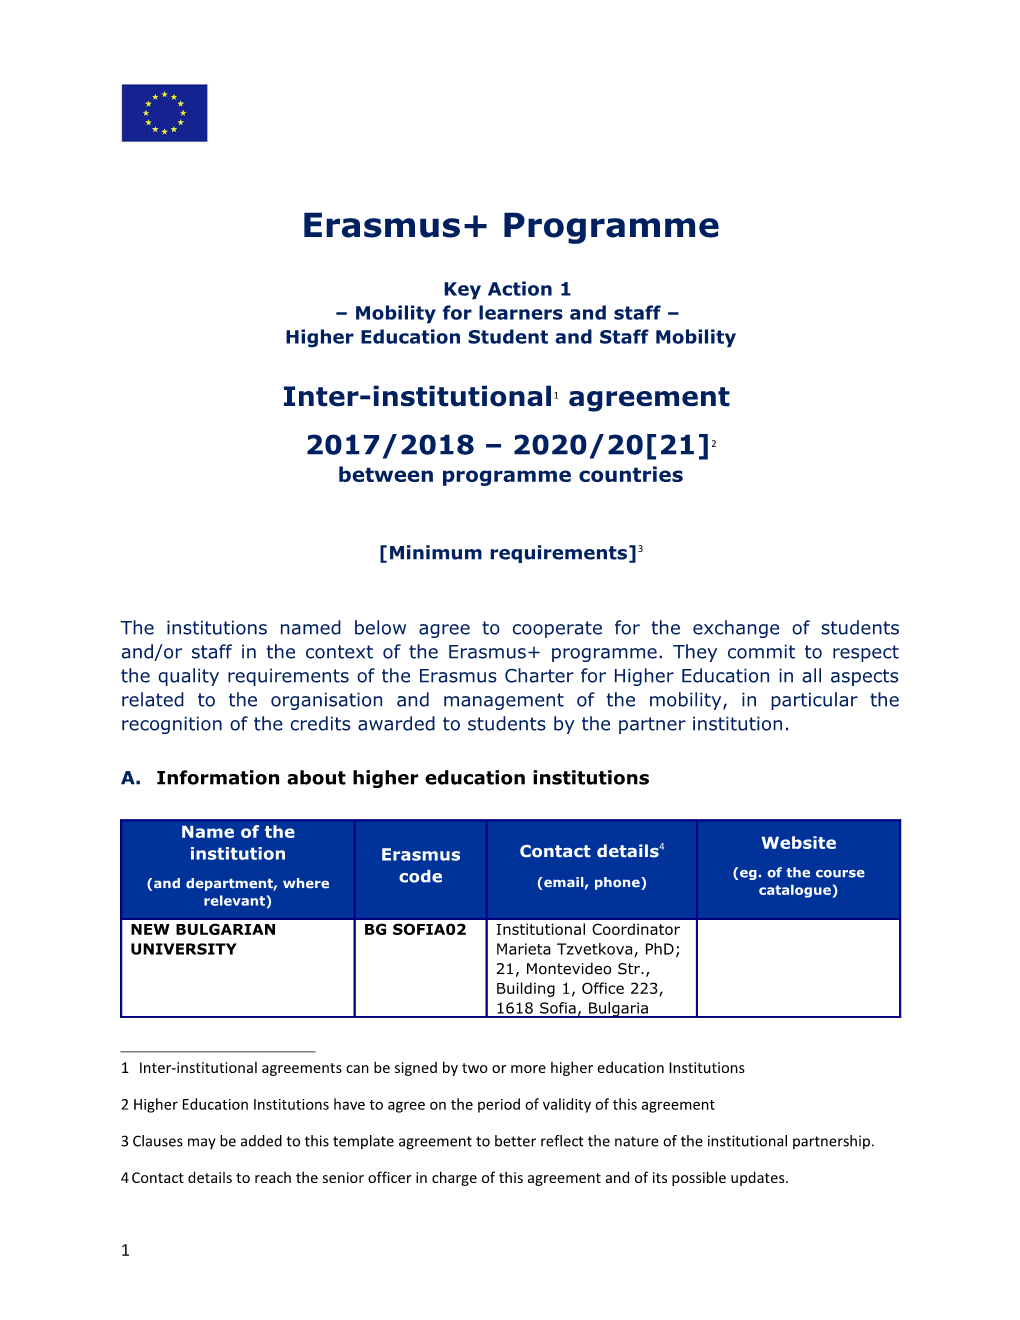 Erasmus+ Programme s2